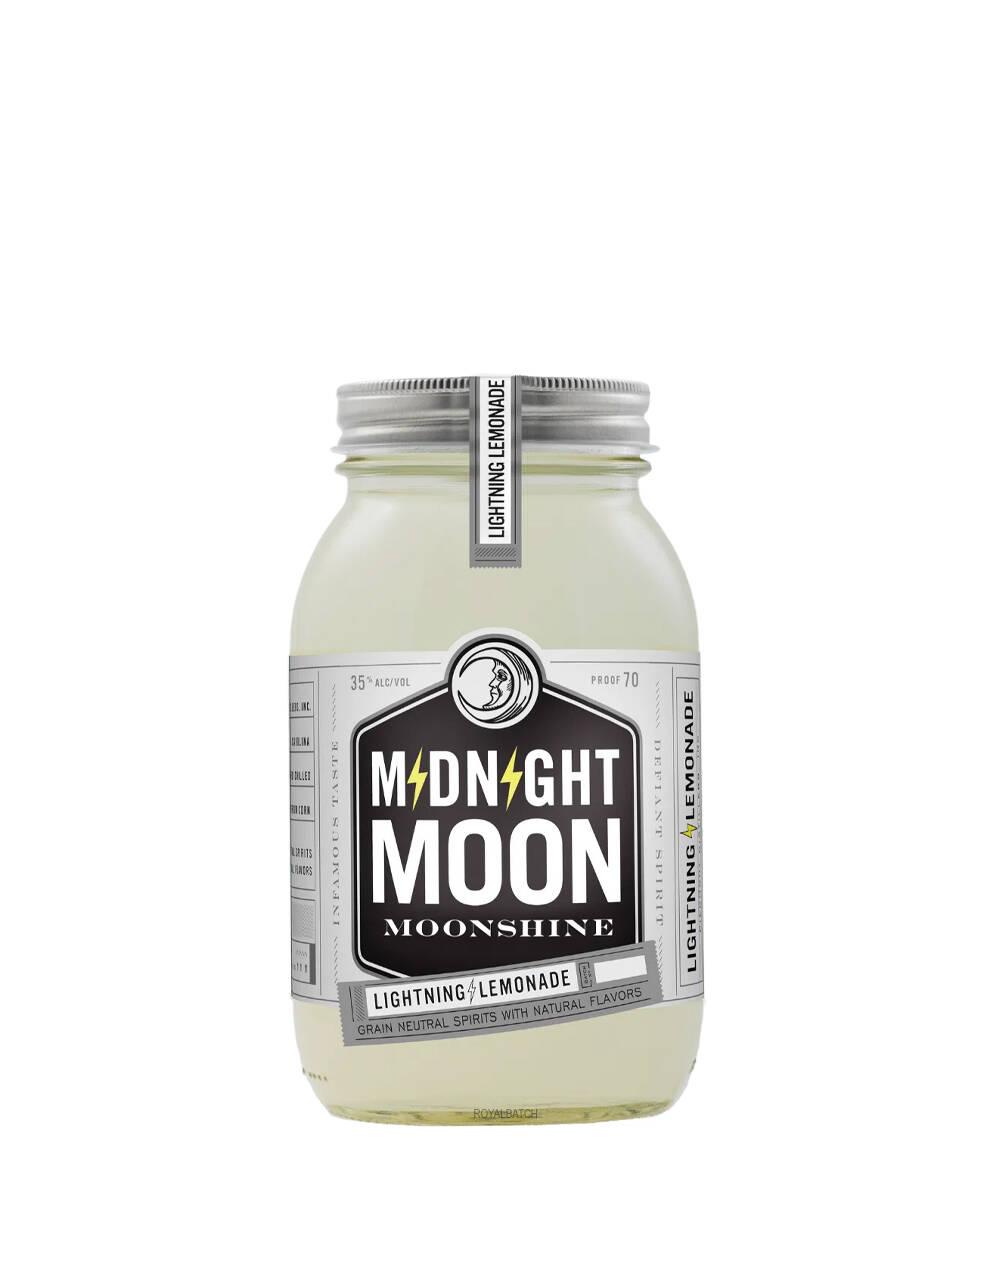 Midnight Moon Lightning Lemonade Moonshine